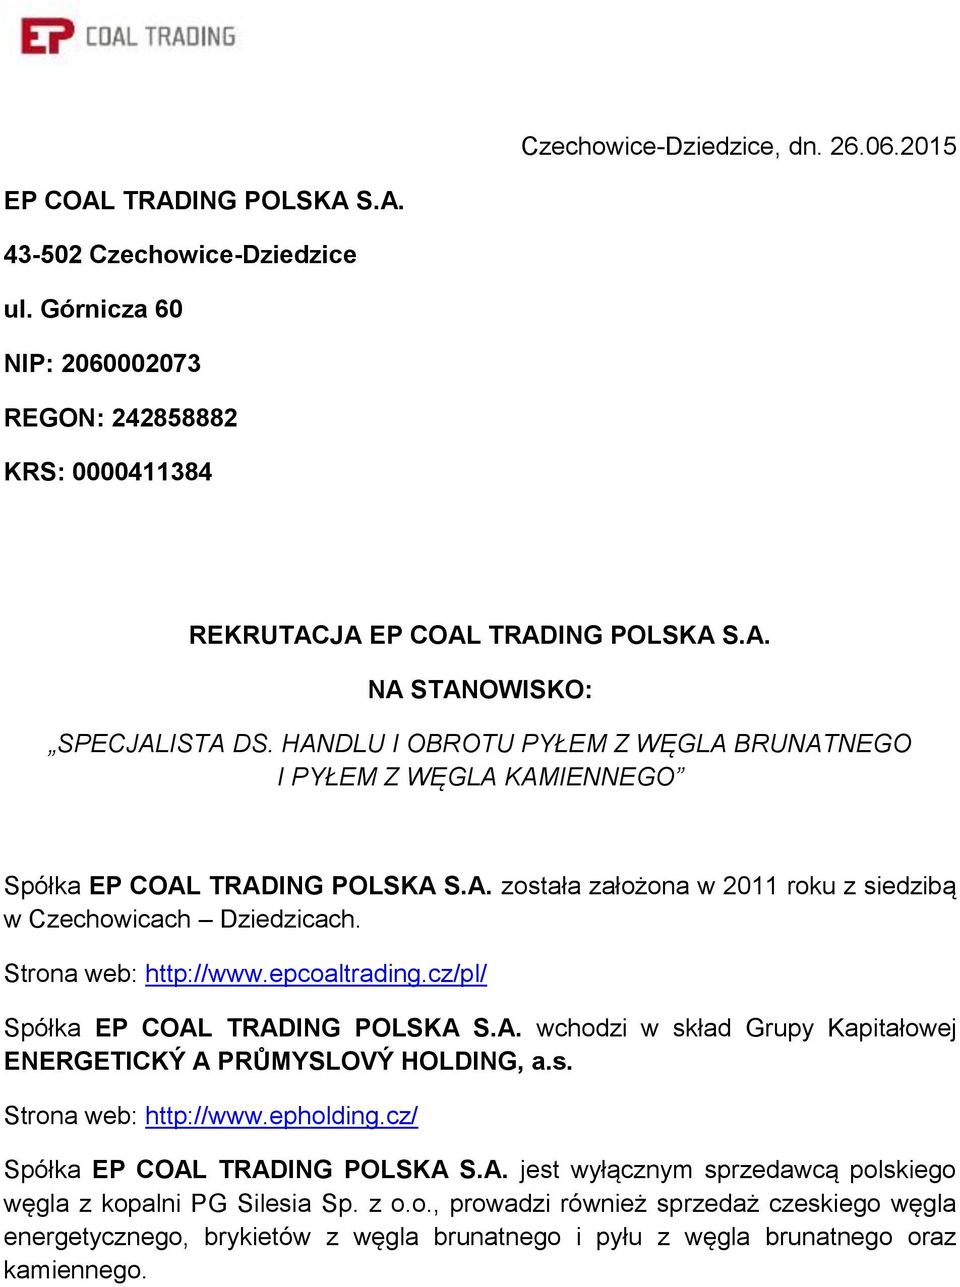 epcoaltrading.cz/pl/ Spółka EP COAL TRADING POLSKA S.A. wchodzi w skład Grupy Kapitałowej ENERGETICKÝ A PRŮMYSLOVÝ HOLDING, a.s. Strona web: http://www.epholding.cz/ Spółka EP COAL TRADING POLSKA S.A. jest wyłącznym sprzedawcą polskiego węgla z kopalni PG Silesia Sp.